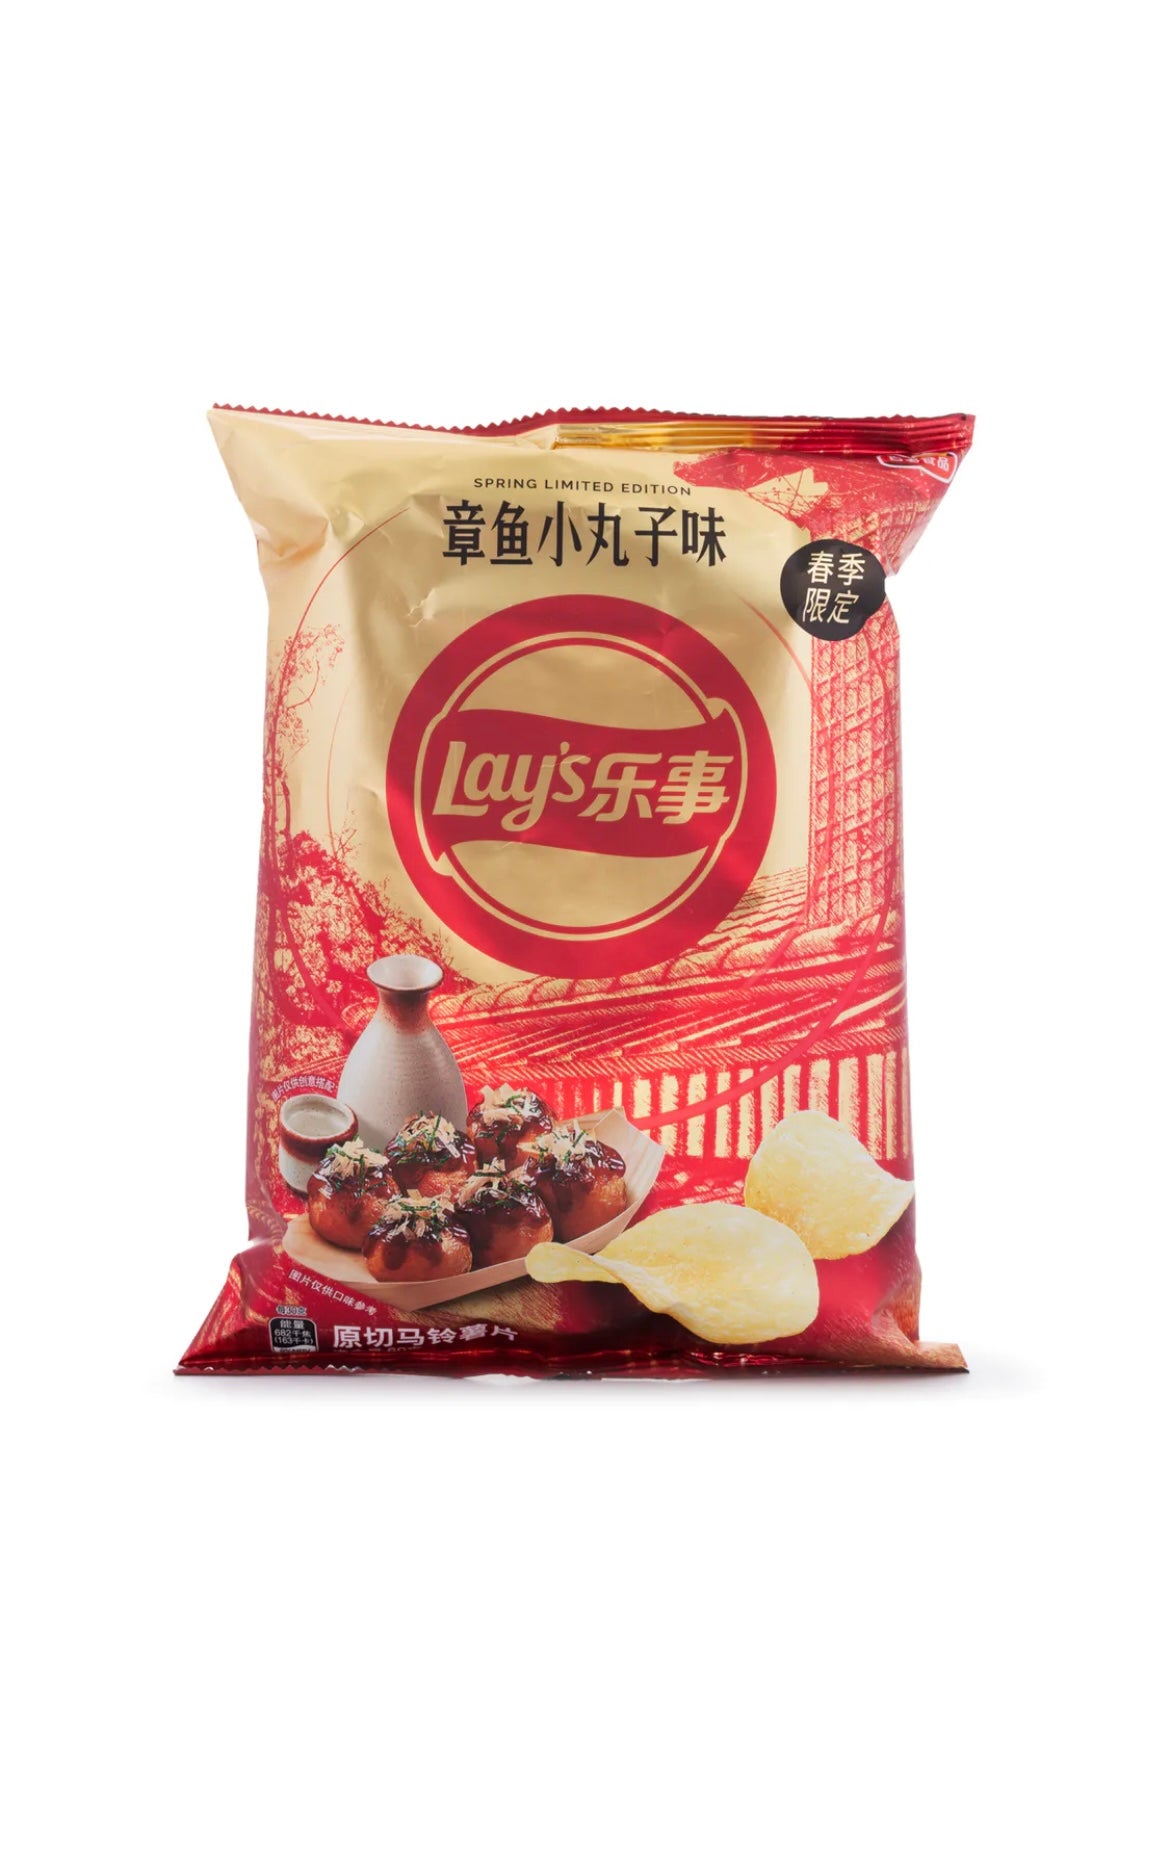 Lays Takoyaki Chips (China)